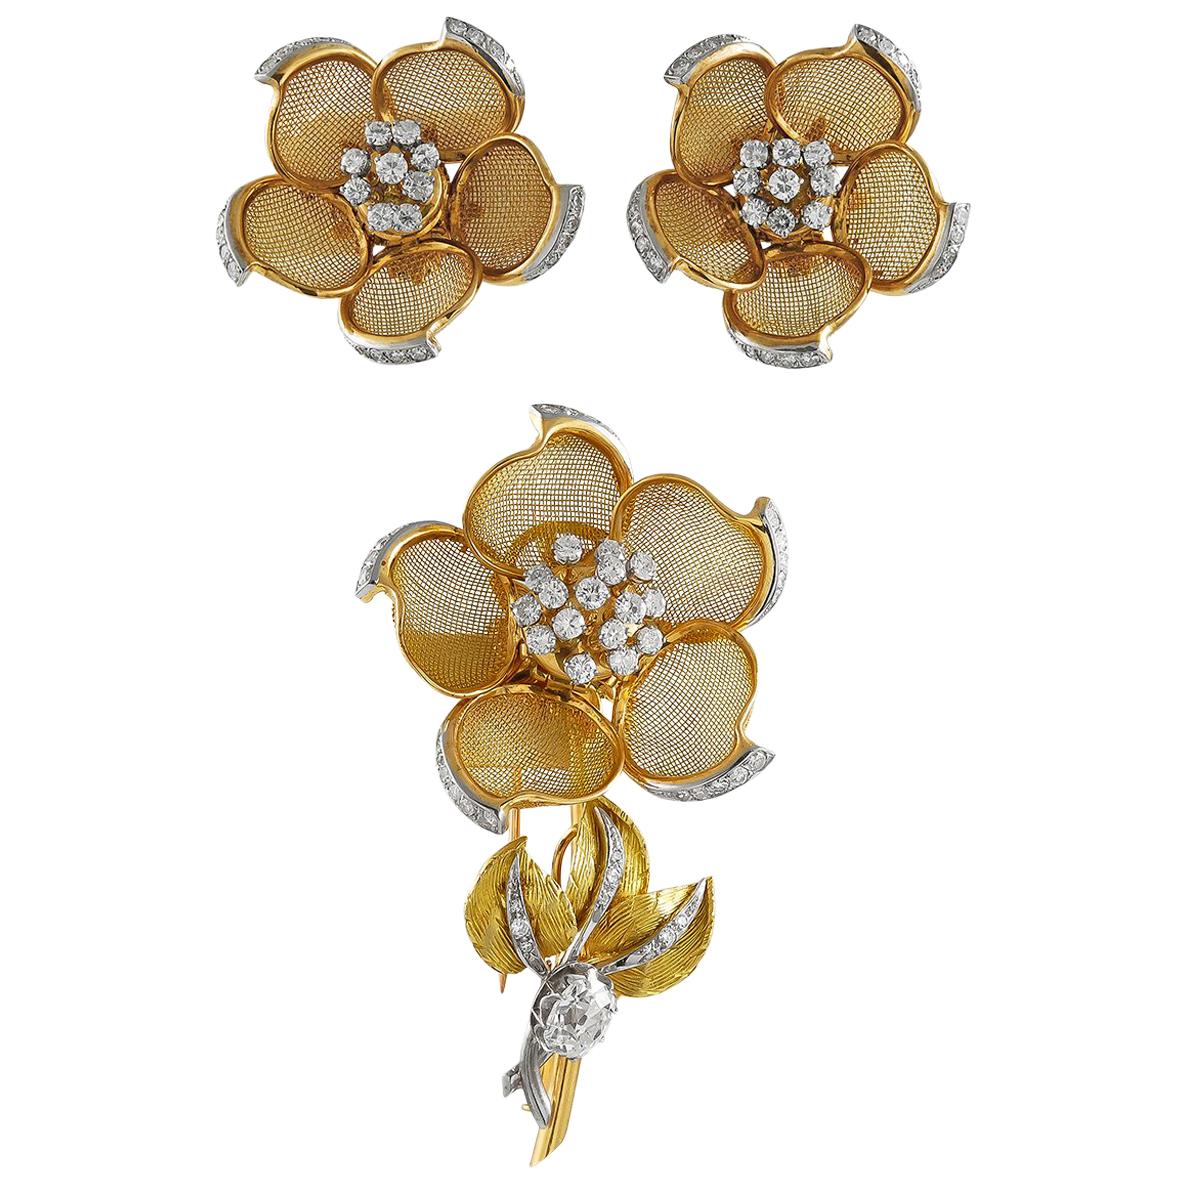 18 Karat Yellow Gold Diamond Mesh Flower Brooch, Earrings